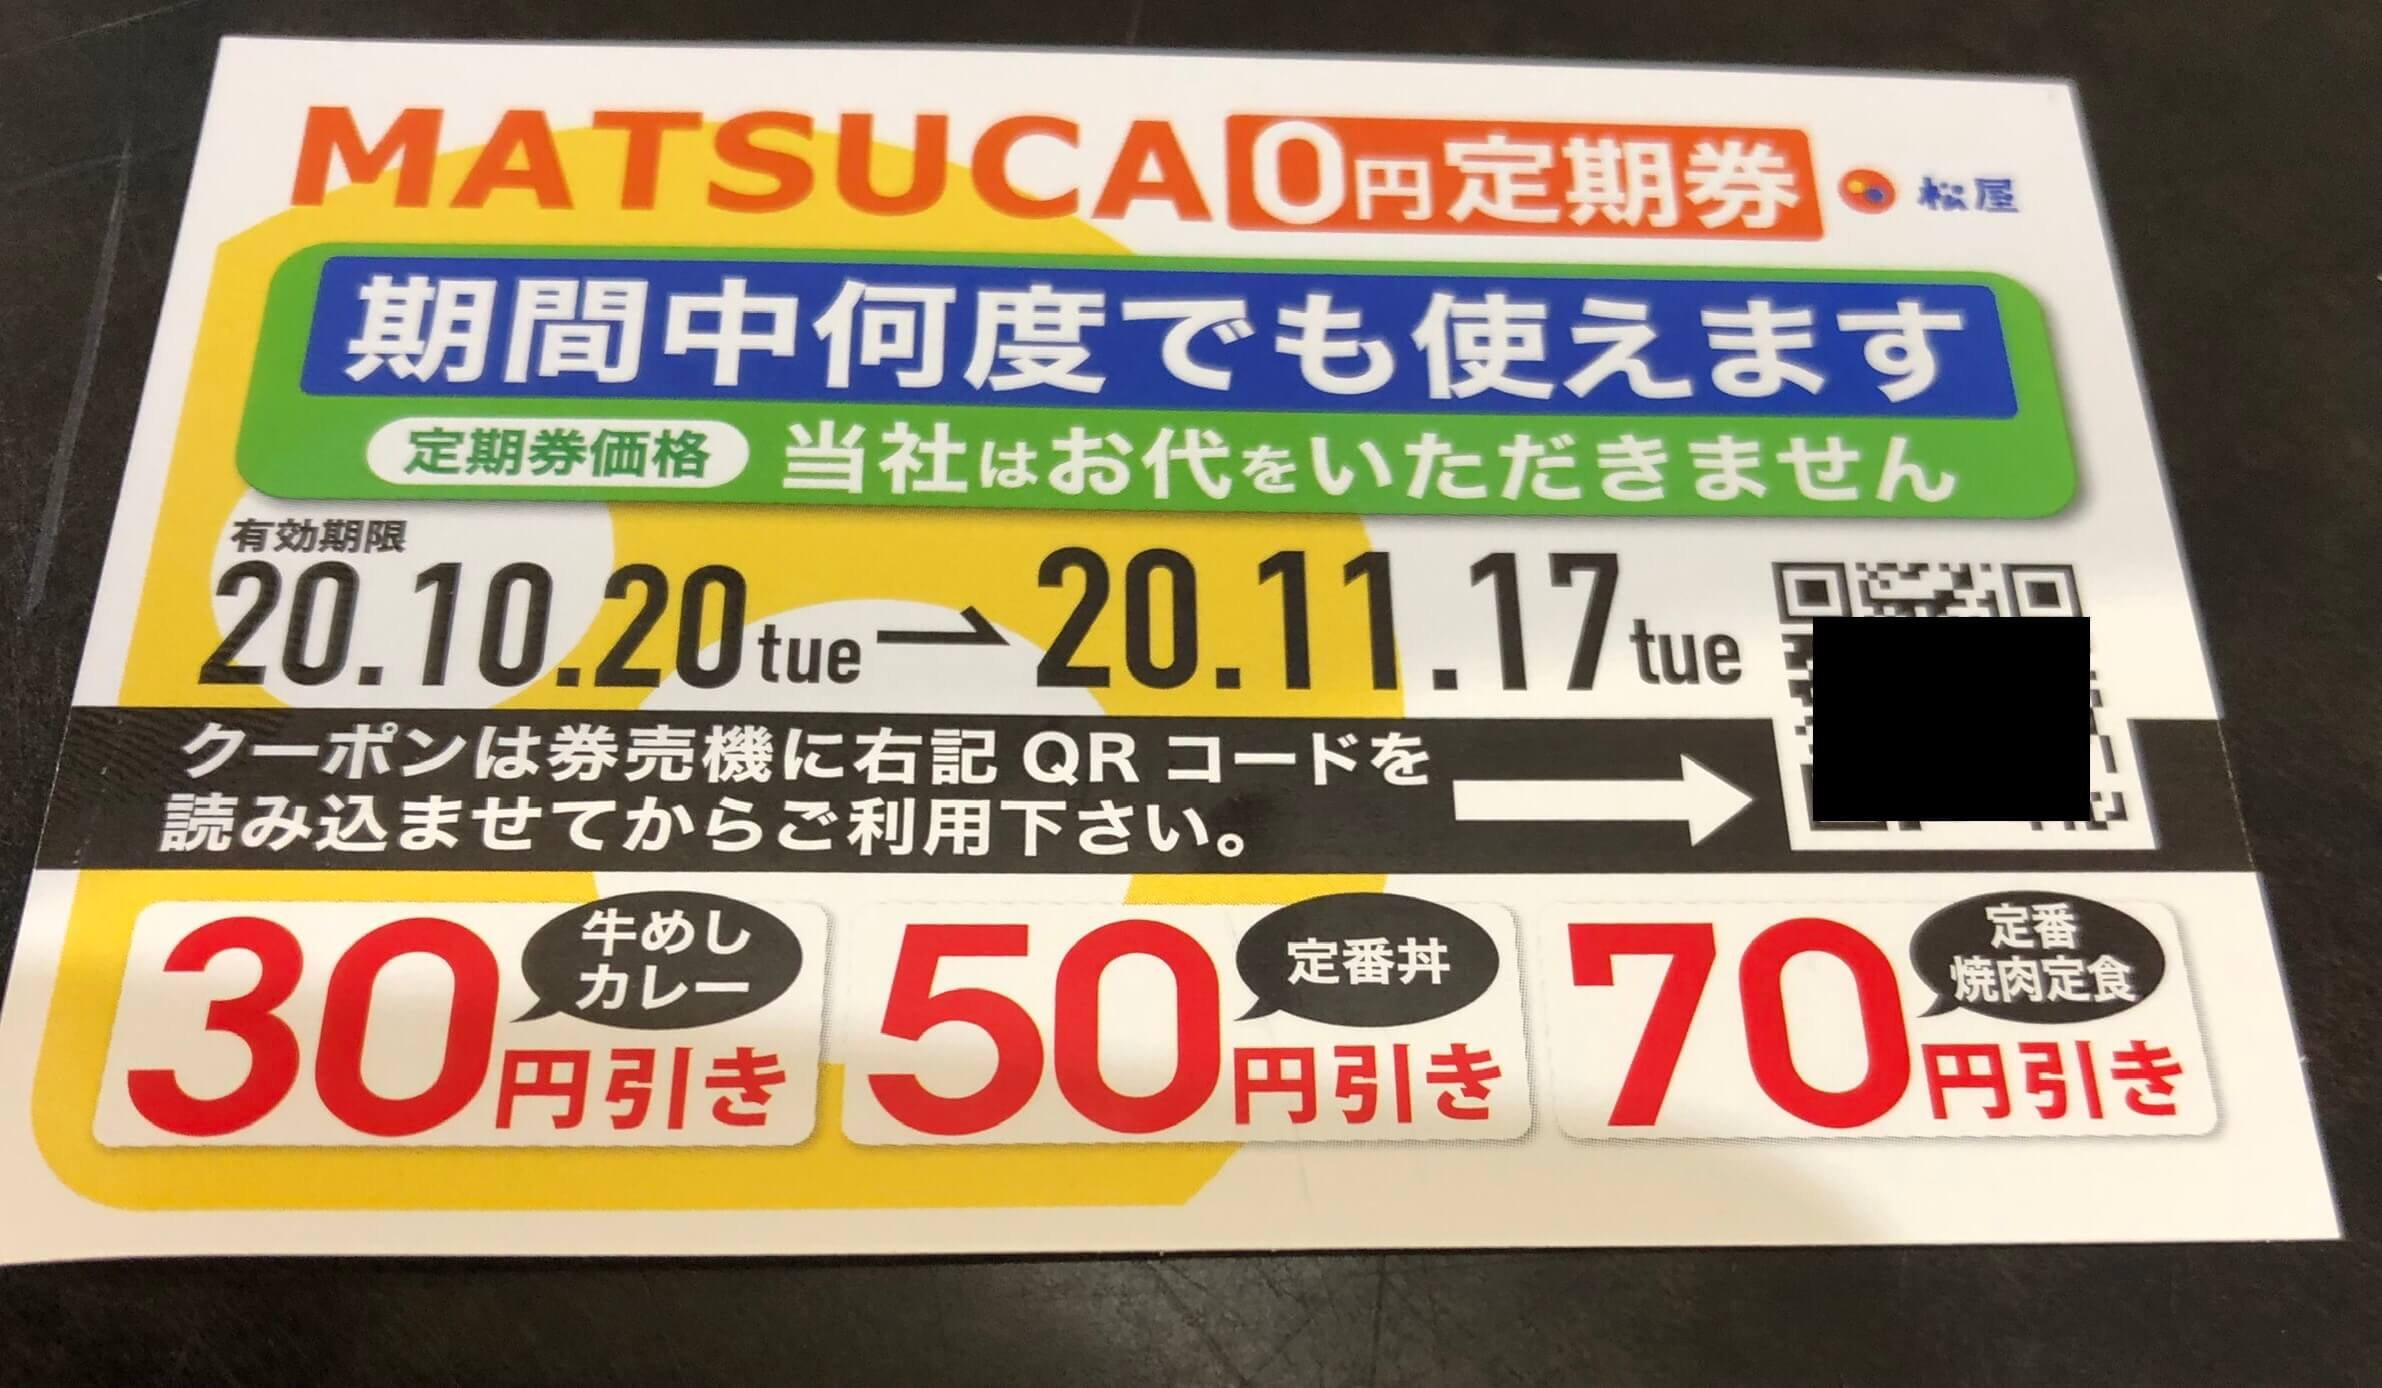 松屋 MATSUCA 0円定期券